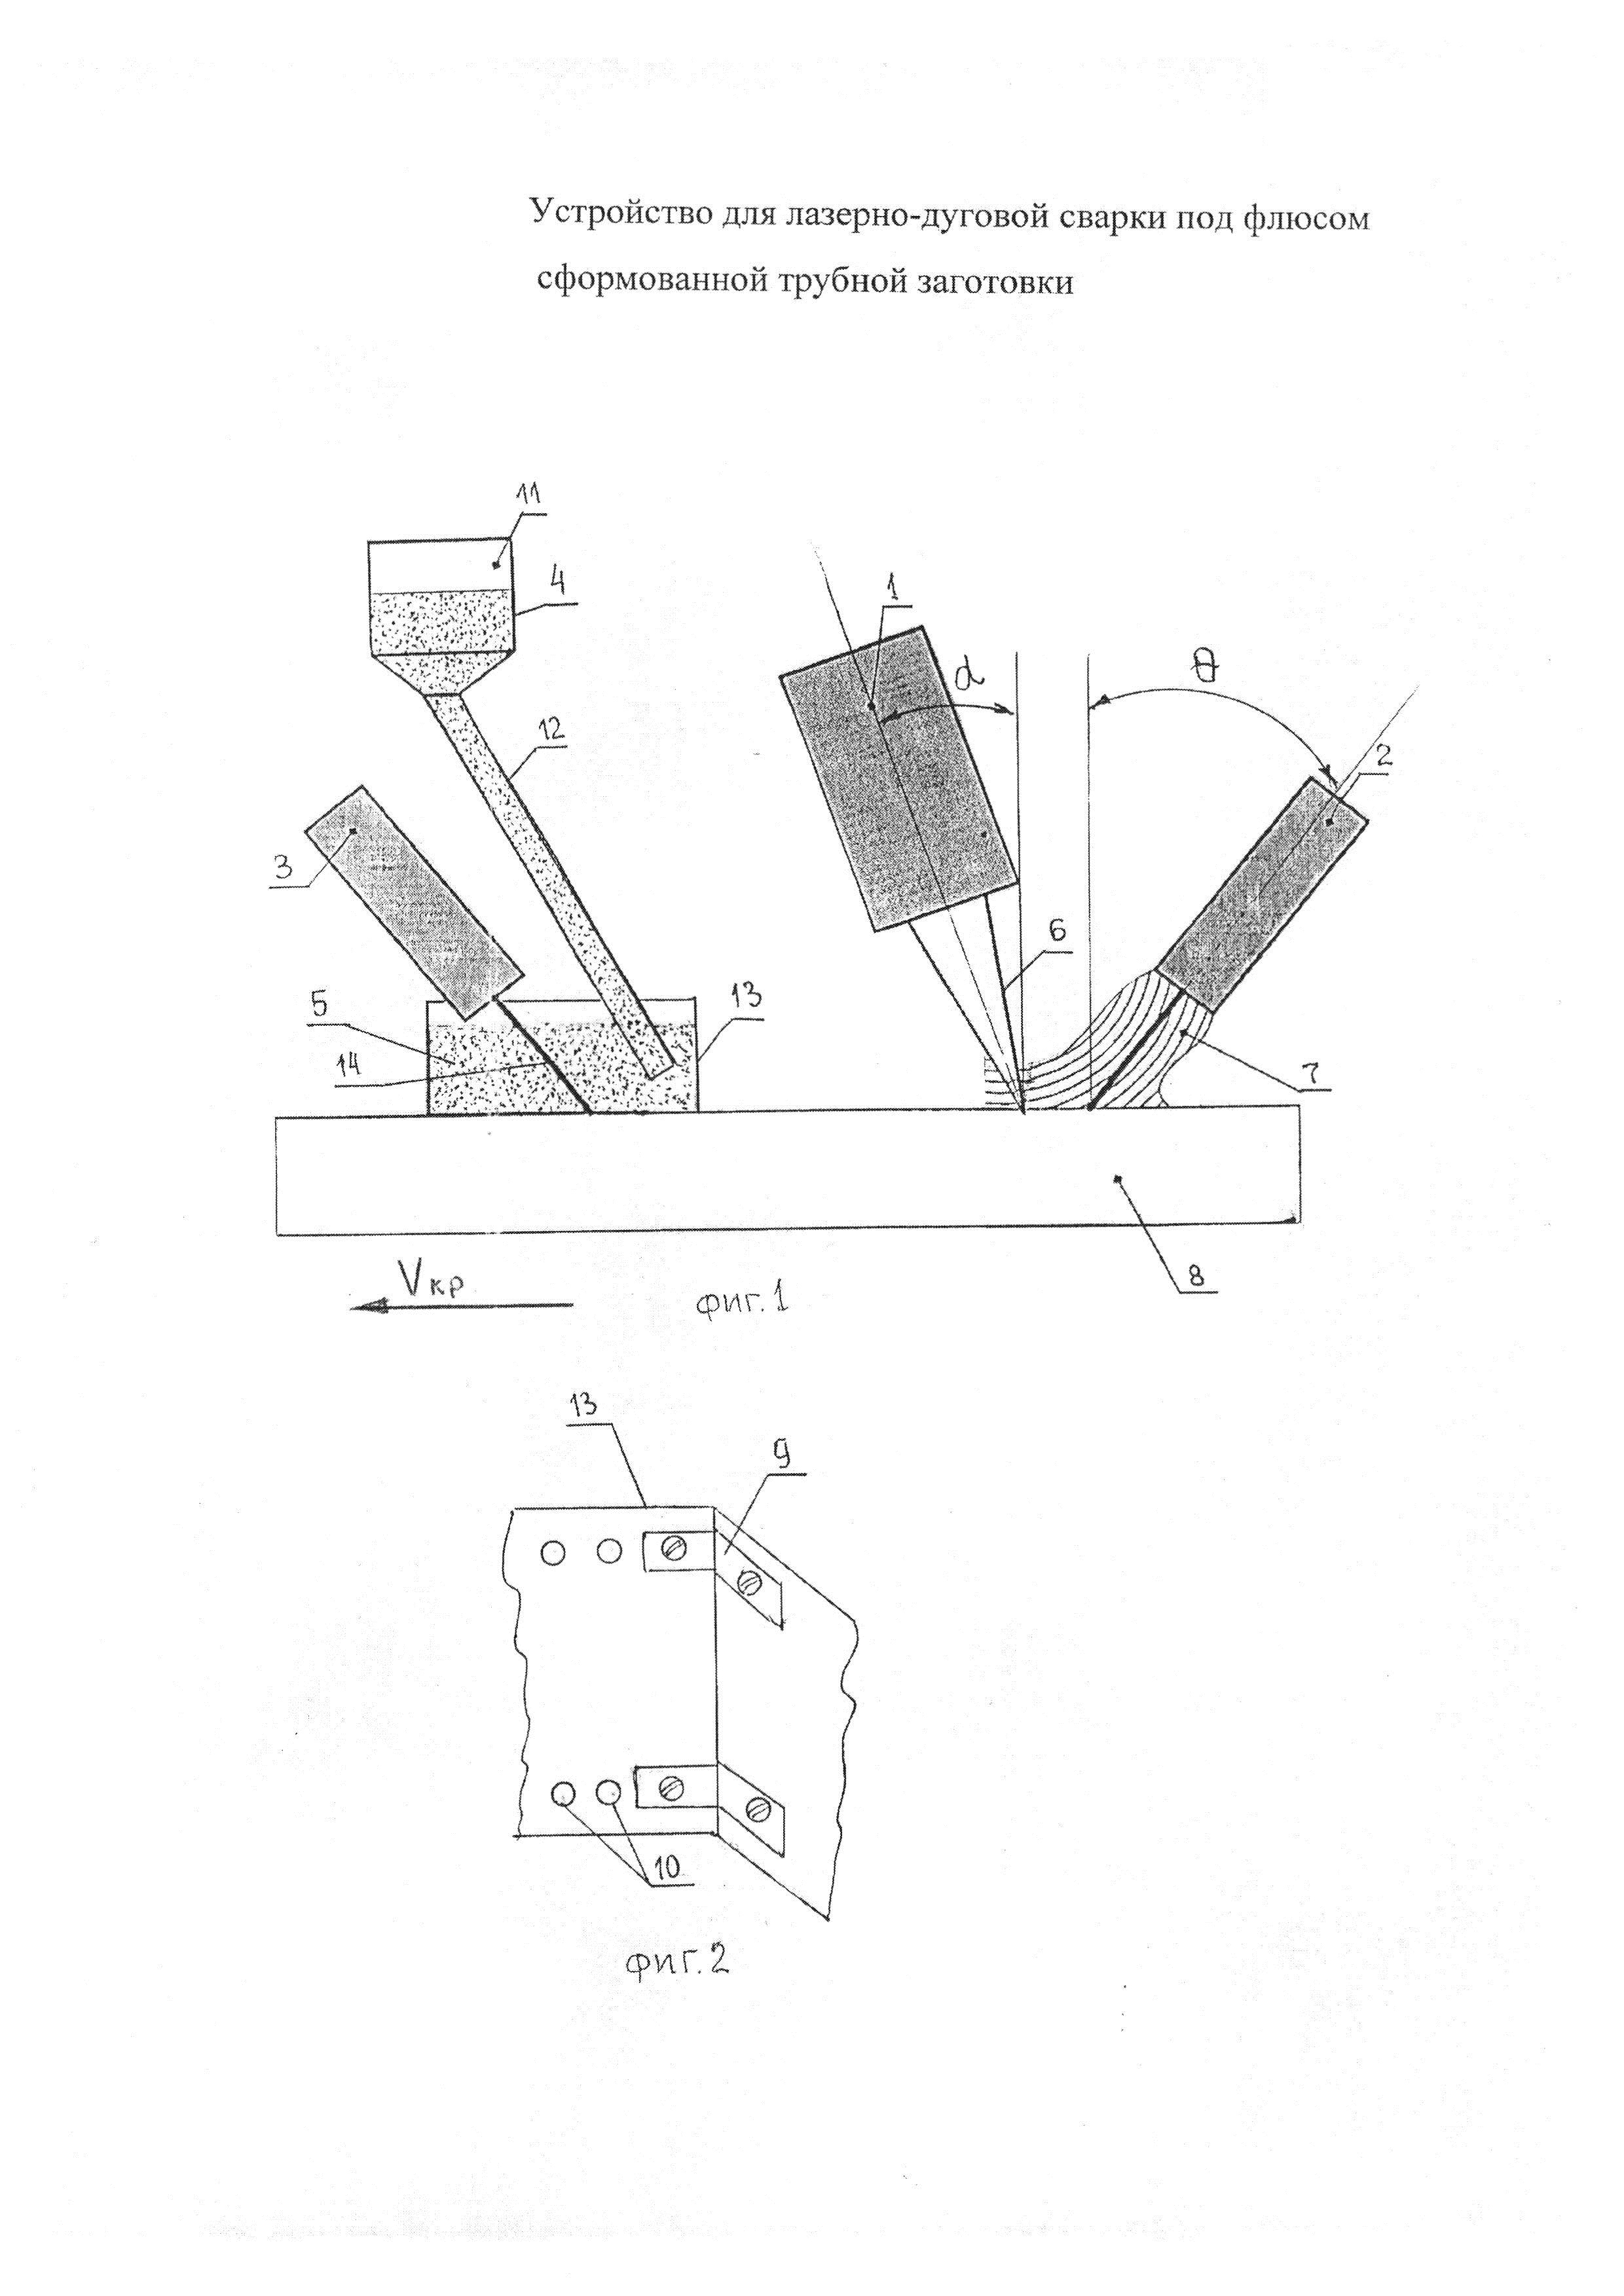 Устройство для лазерно-дуговой сварки стыка сформованной трубной заготовки